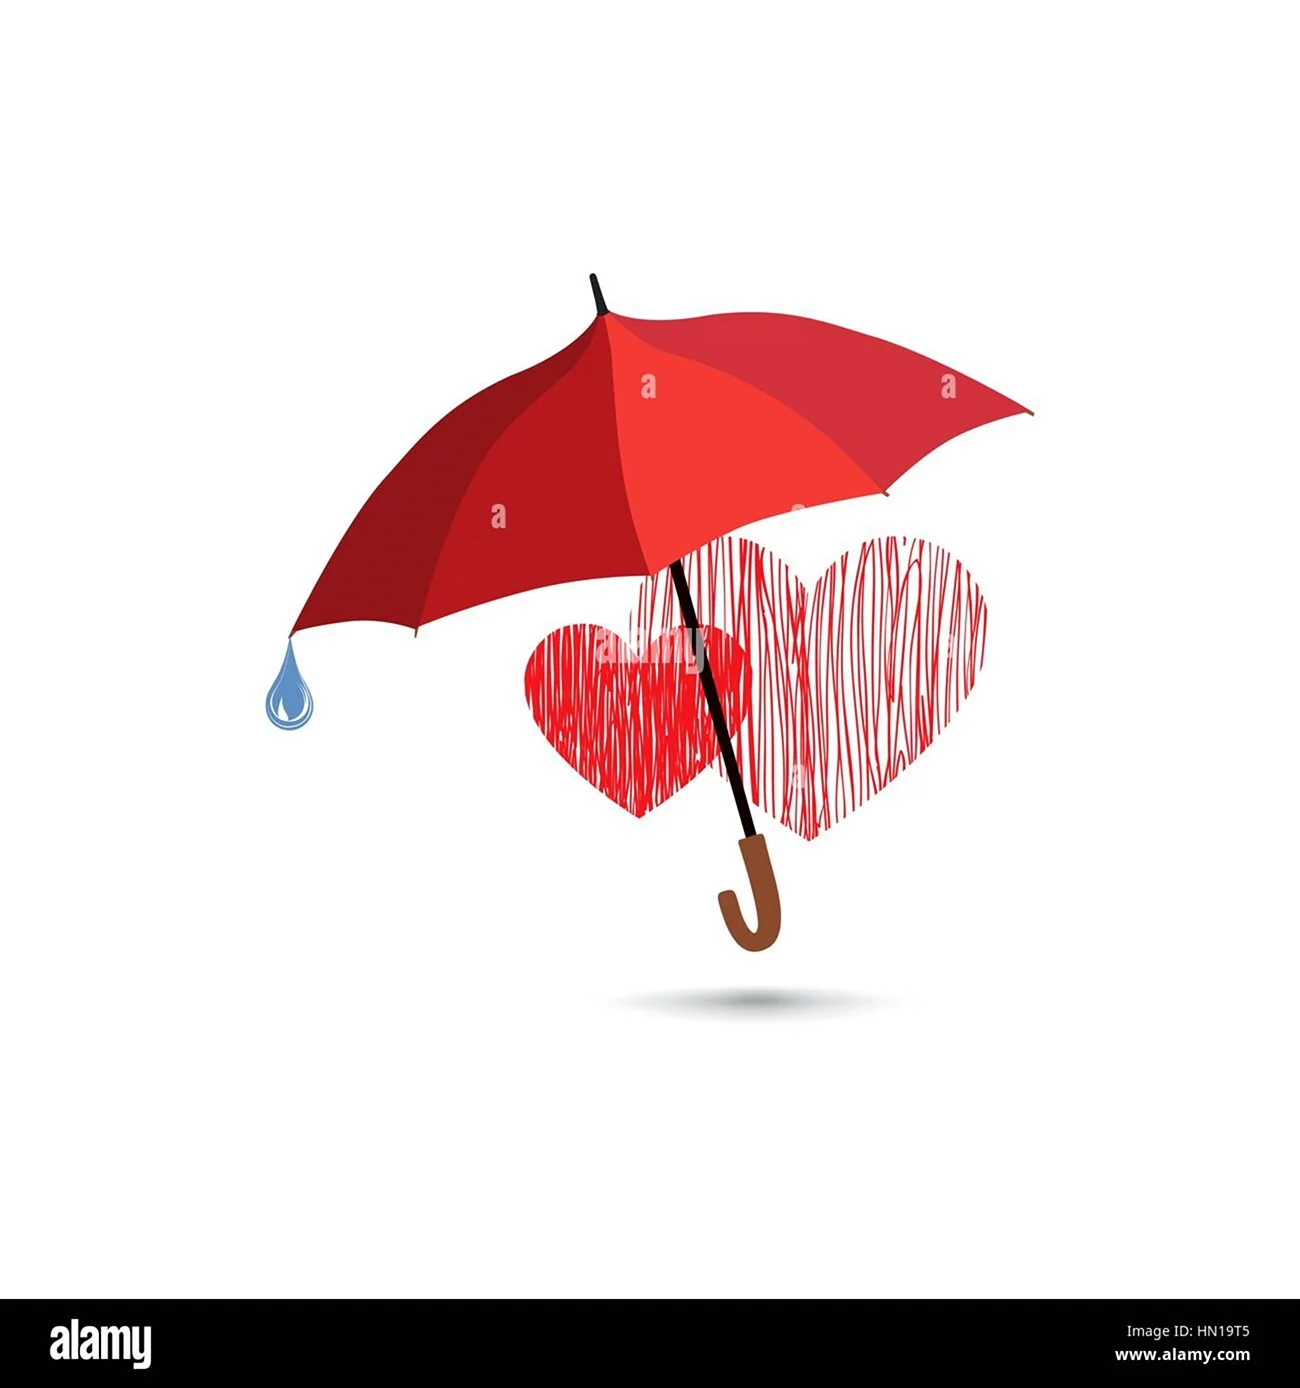 Сердце под зонтом. Красивая картинка